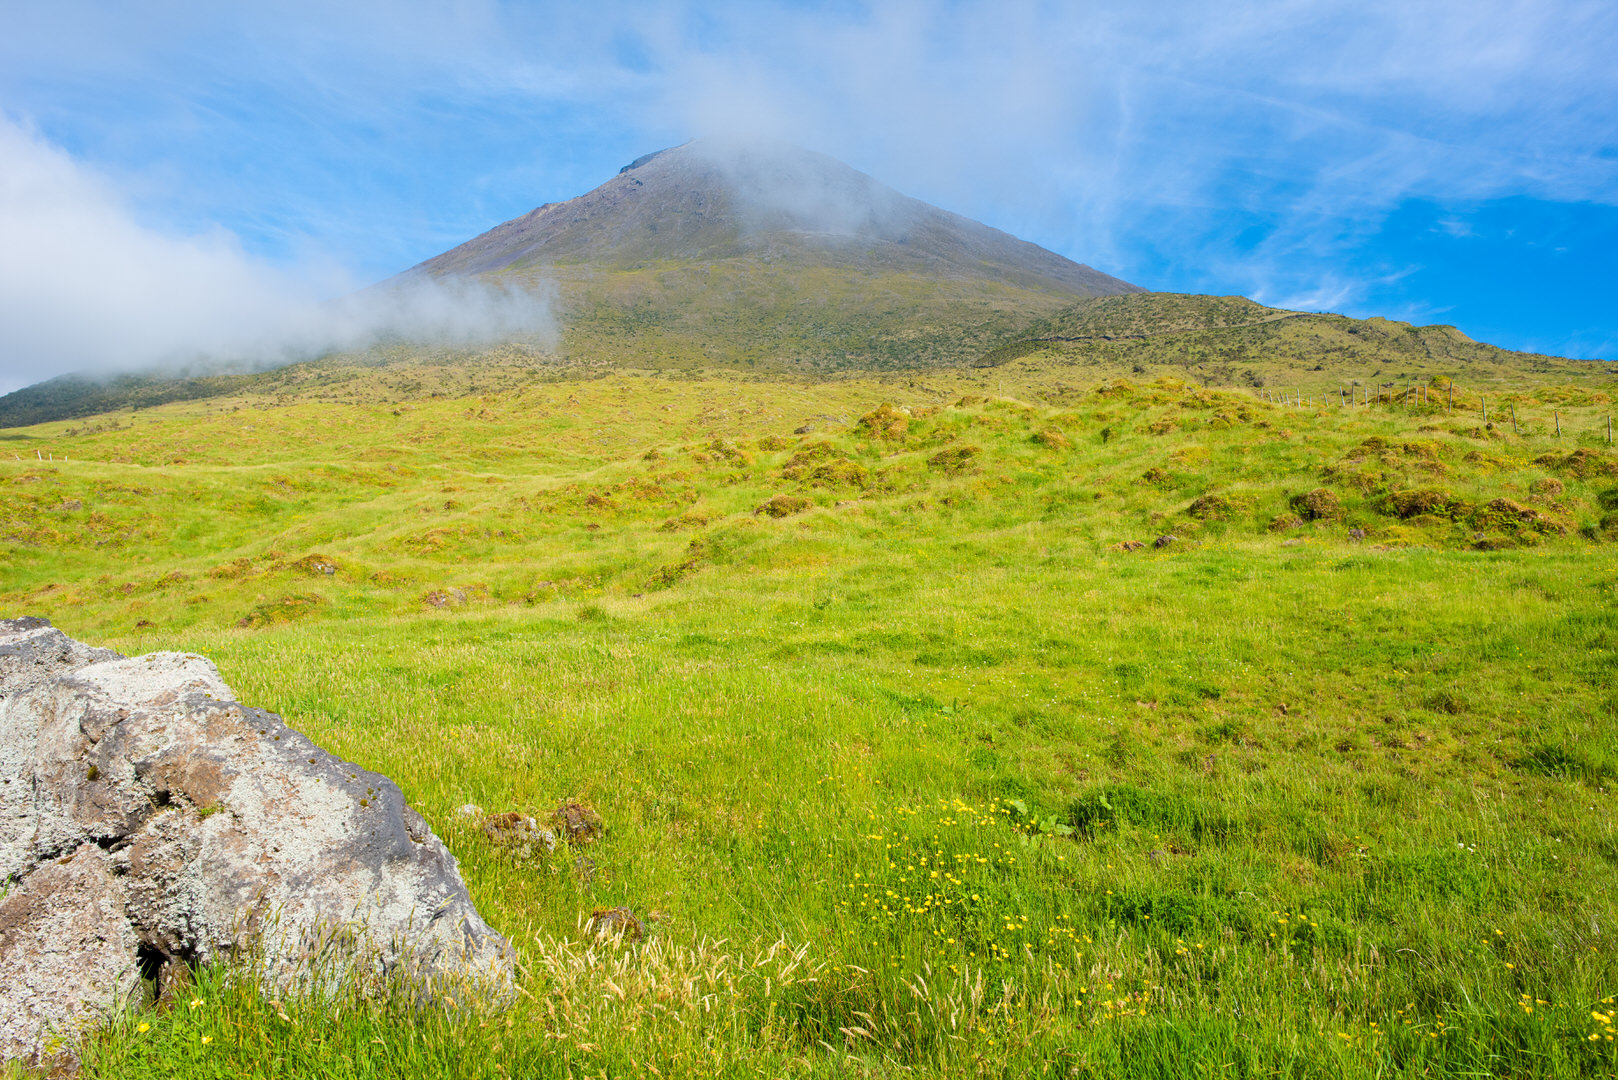 Wir nähern uns dem höchsten Berg von Pico, der auch gleichzeitig der höchste Berg der ganzen Azoren ist.